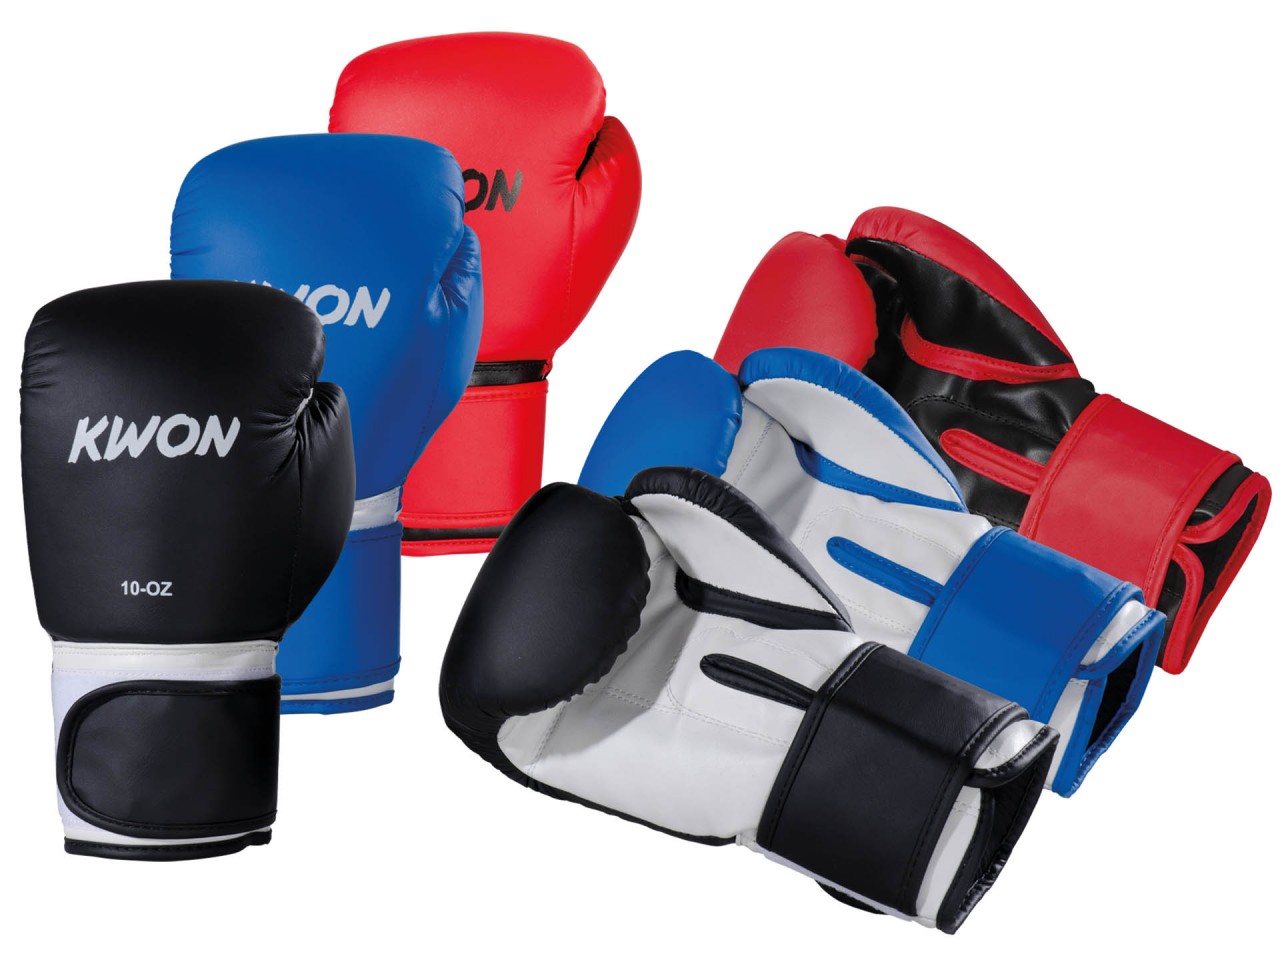 KWON Fitness Boxhandschuhe - Gewicht: 8 oz, 10 oz, 12 oz, 14 oz, 16 oz